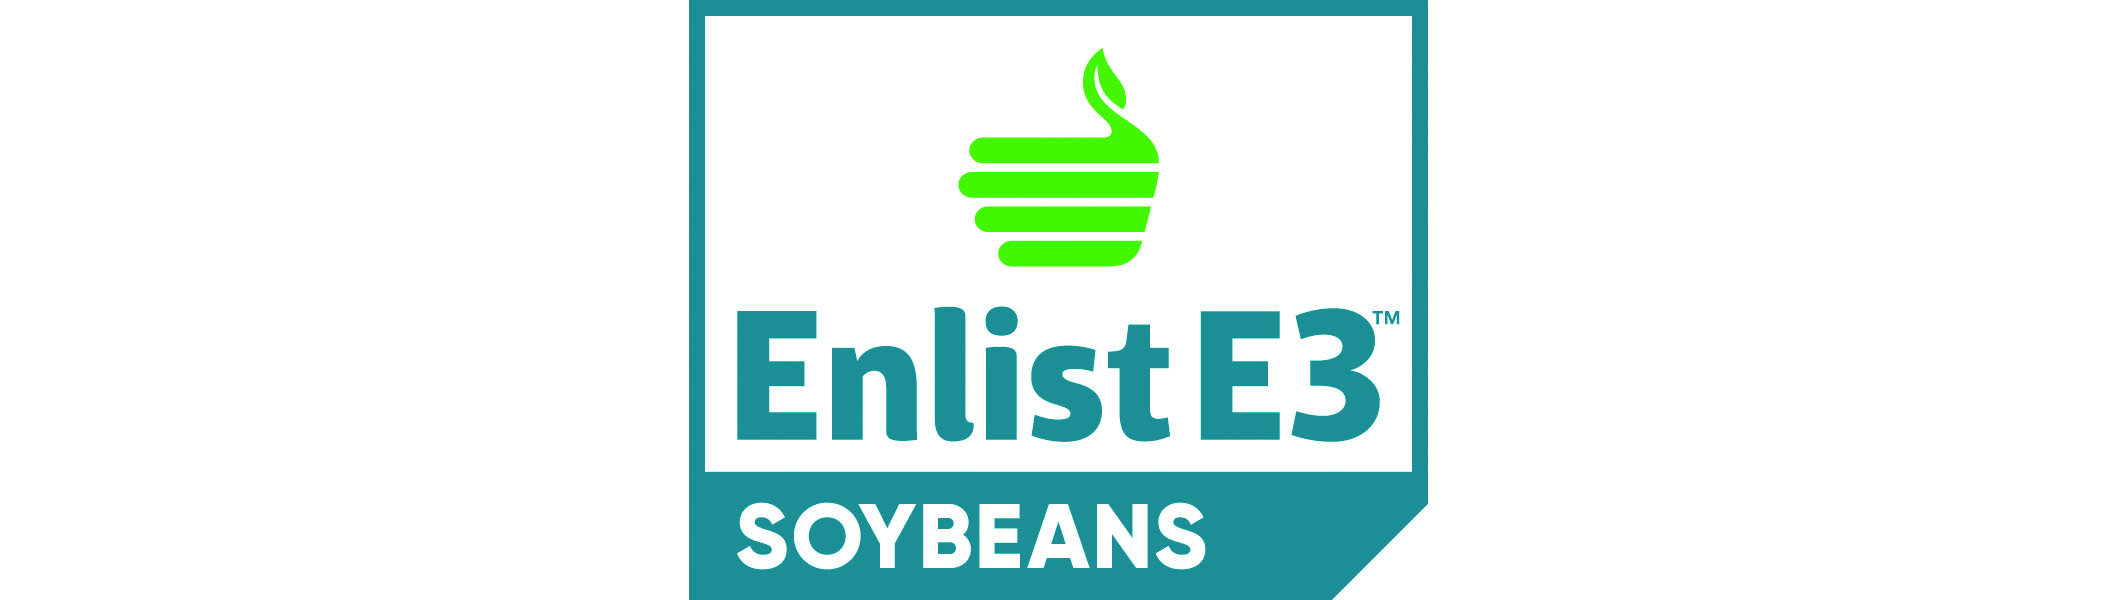 Enlist E3